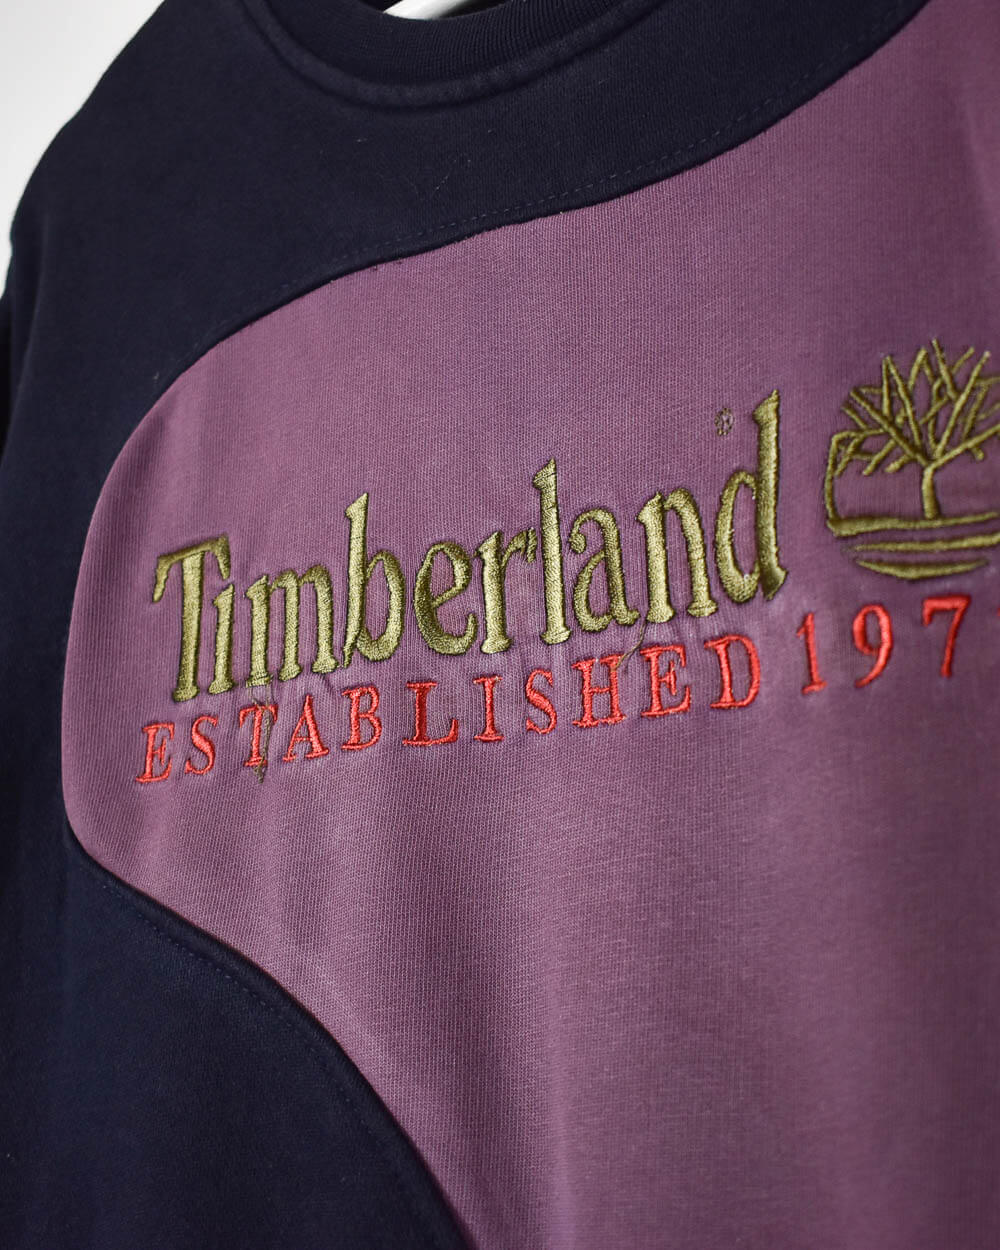 Navy Timberland Established 1973 Rework Sweatshirt - X-Large